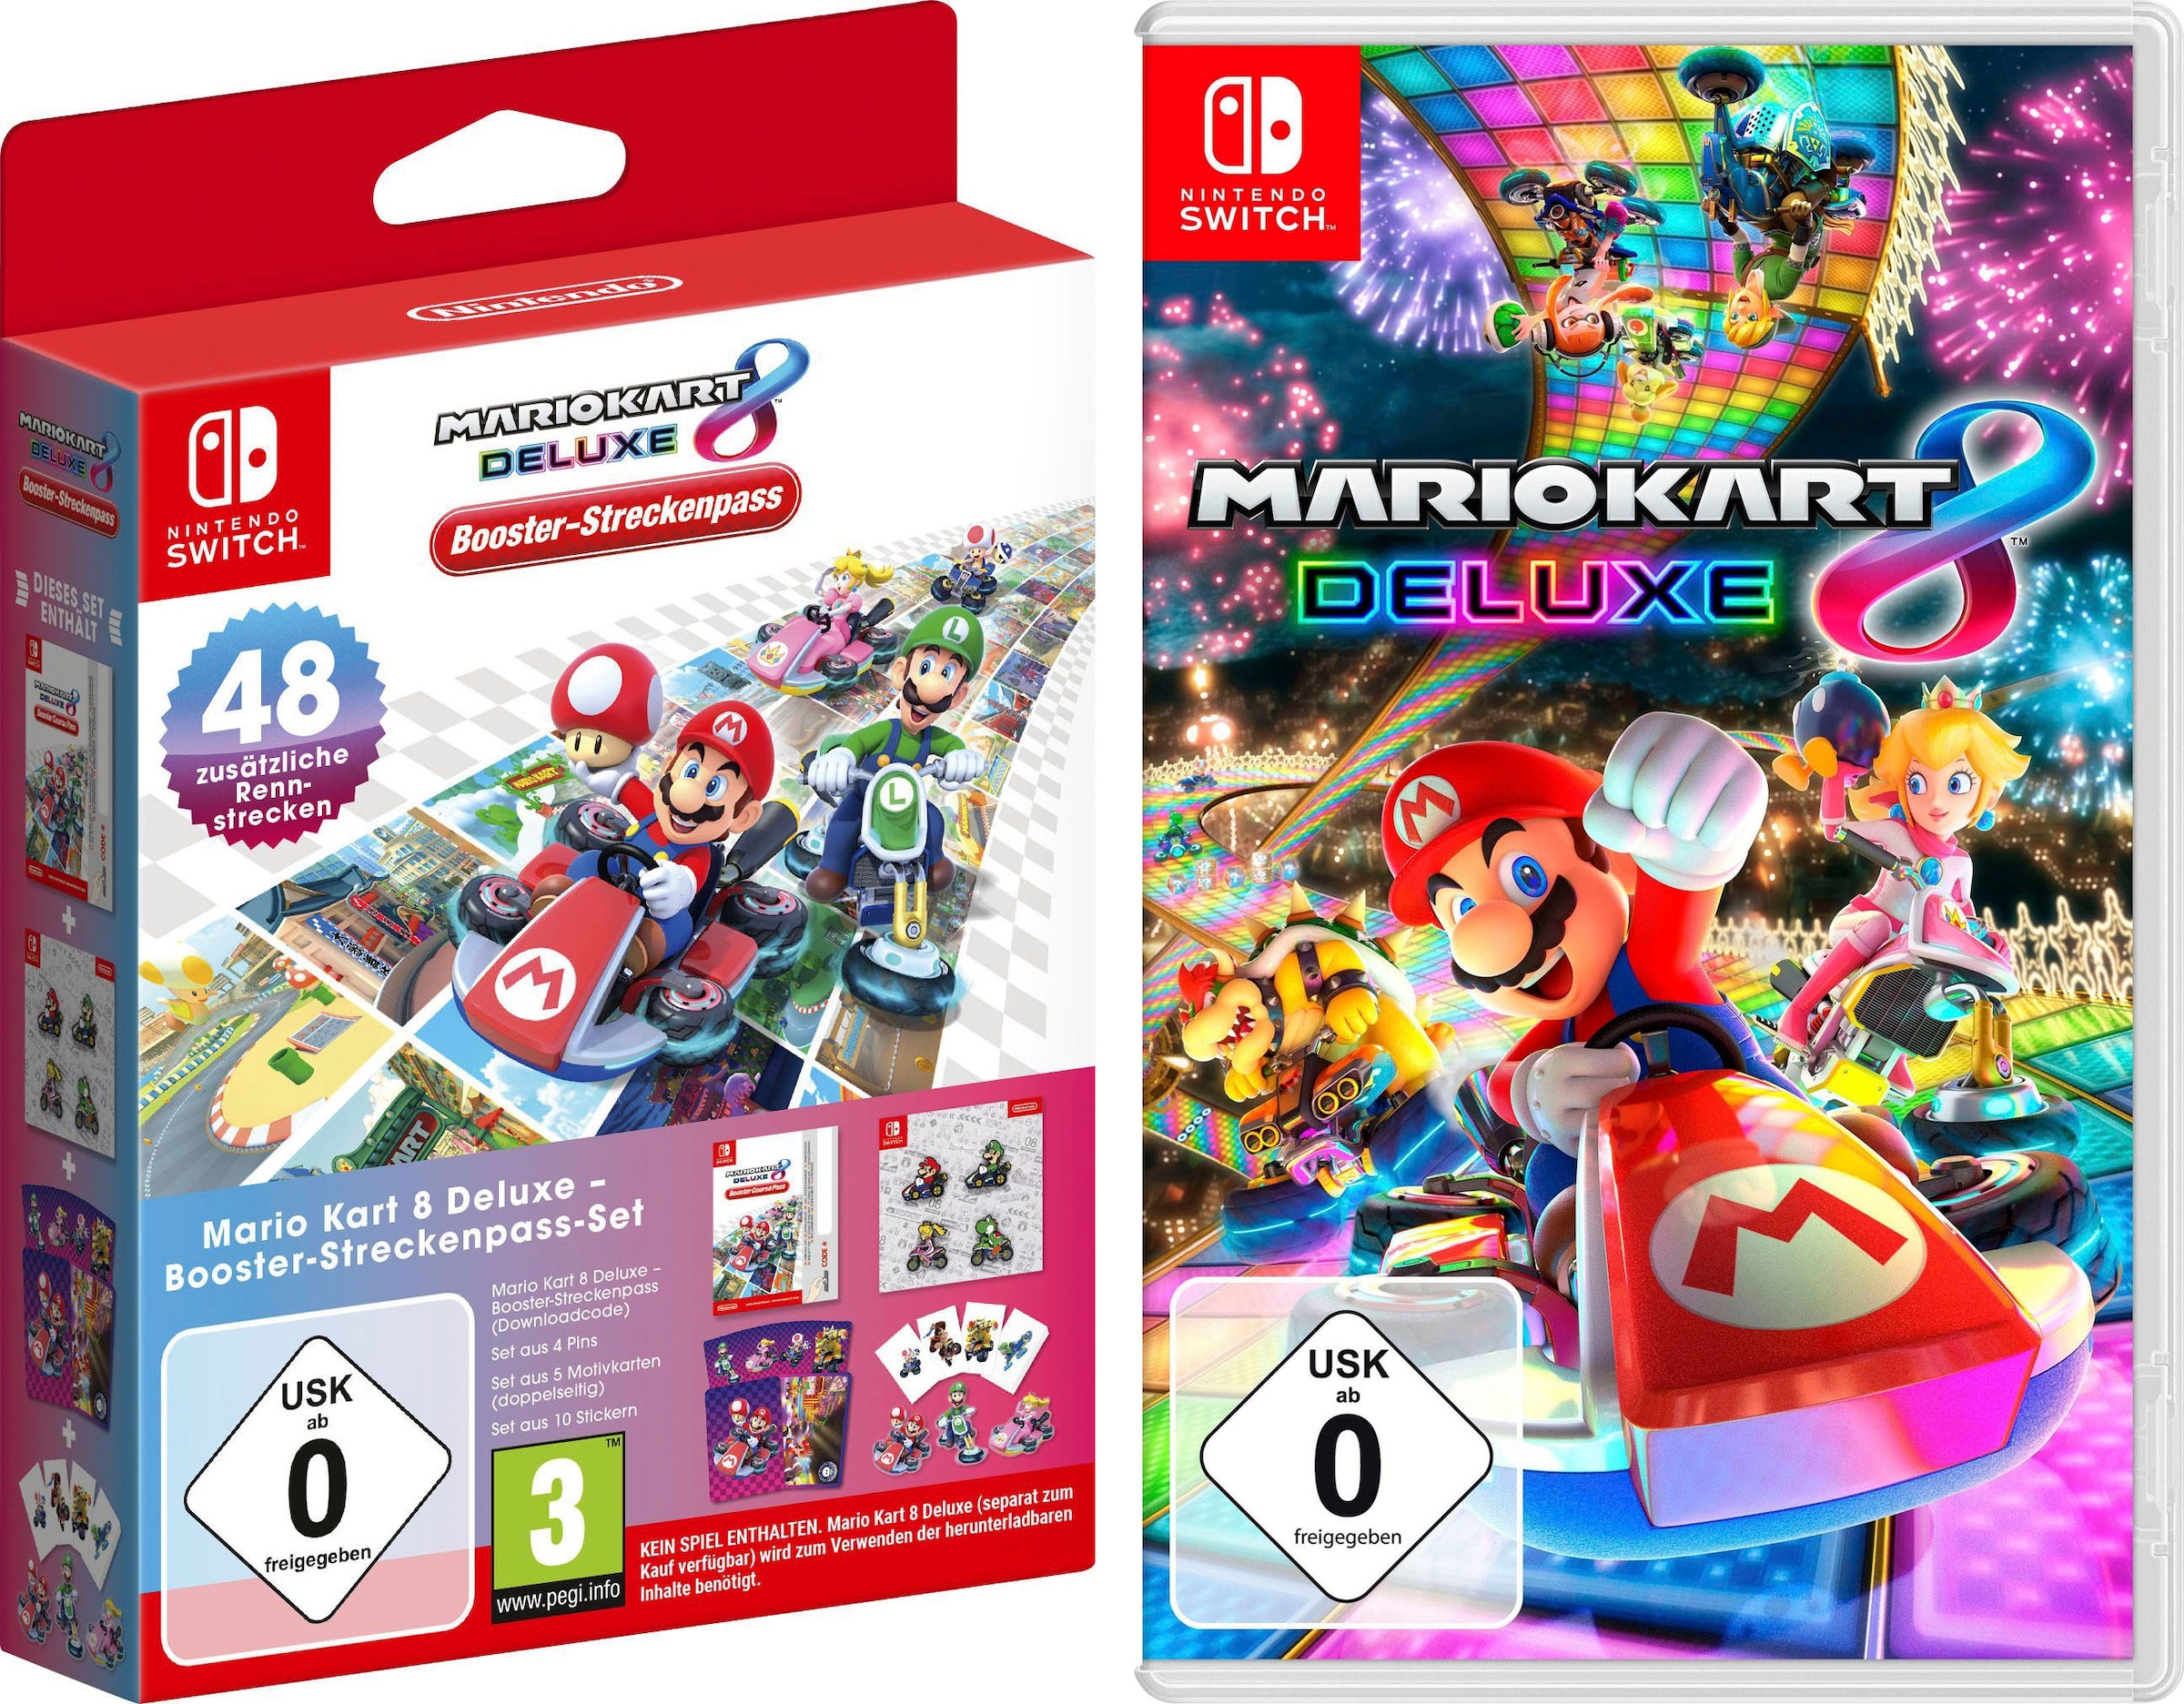 Switch Deluxe »Mario + Kart Mario 8 8 bei Deluxe Booster-Streckenpass-Set«, Nintendo Switch Nintendo Kart Spielesoftware